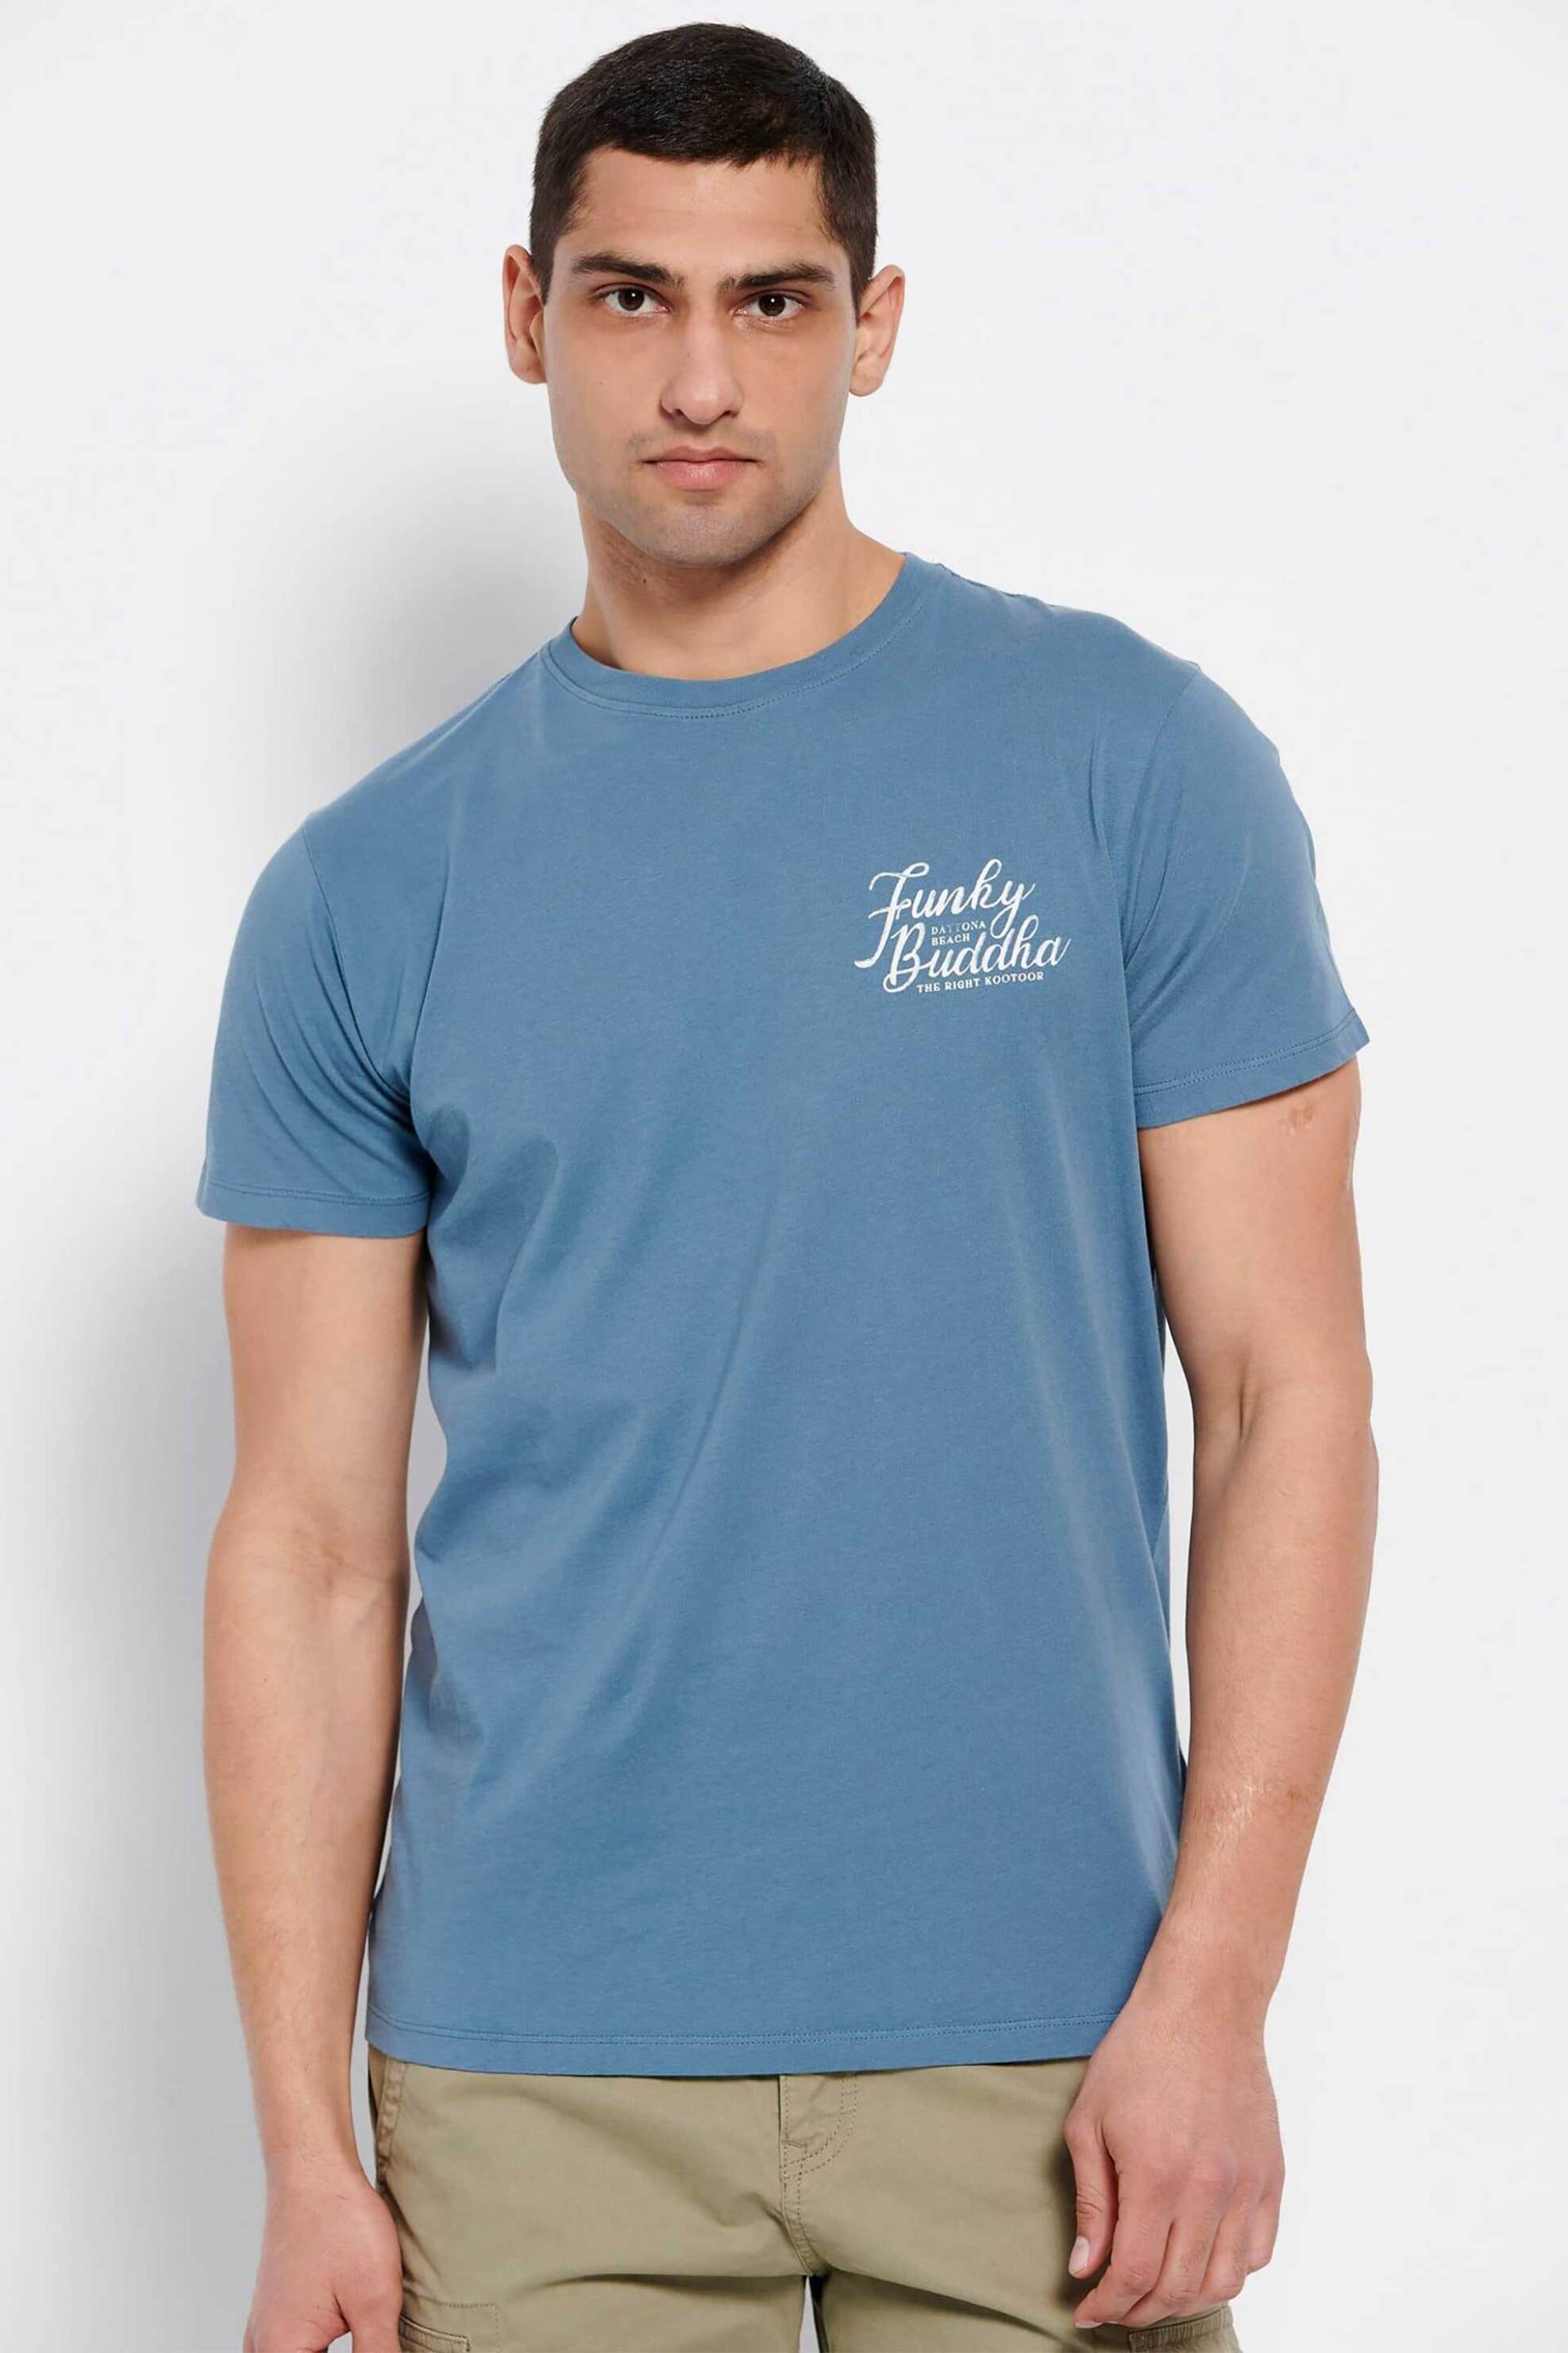 Ανδρική Μόδα > Ανδρικά Ρούχα > Ανδρικές Μπλούζες > Ανδρικά T-Shirts Funky Buddha ανδρικό βαμβακερό T-shirt μονόχρωμο με logo print στο στήθος - FBM007-027-04 Μπλε Ραφ